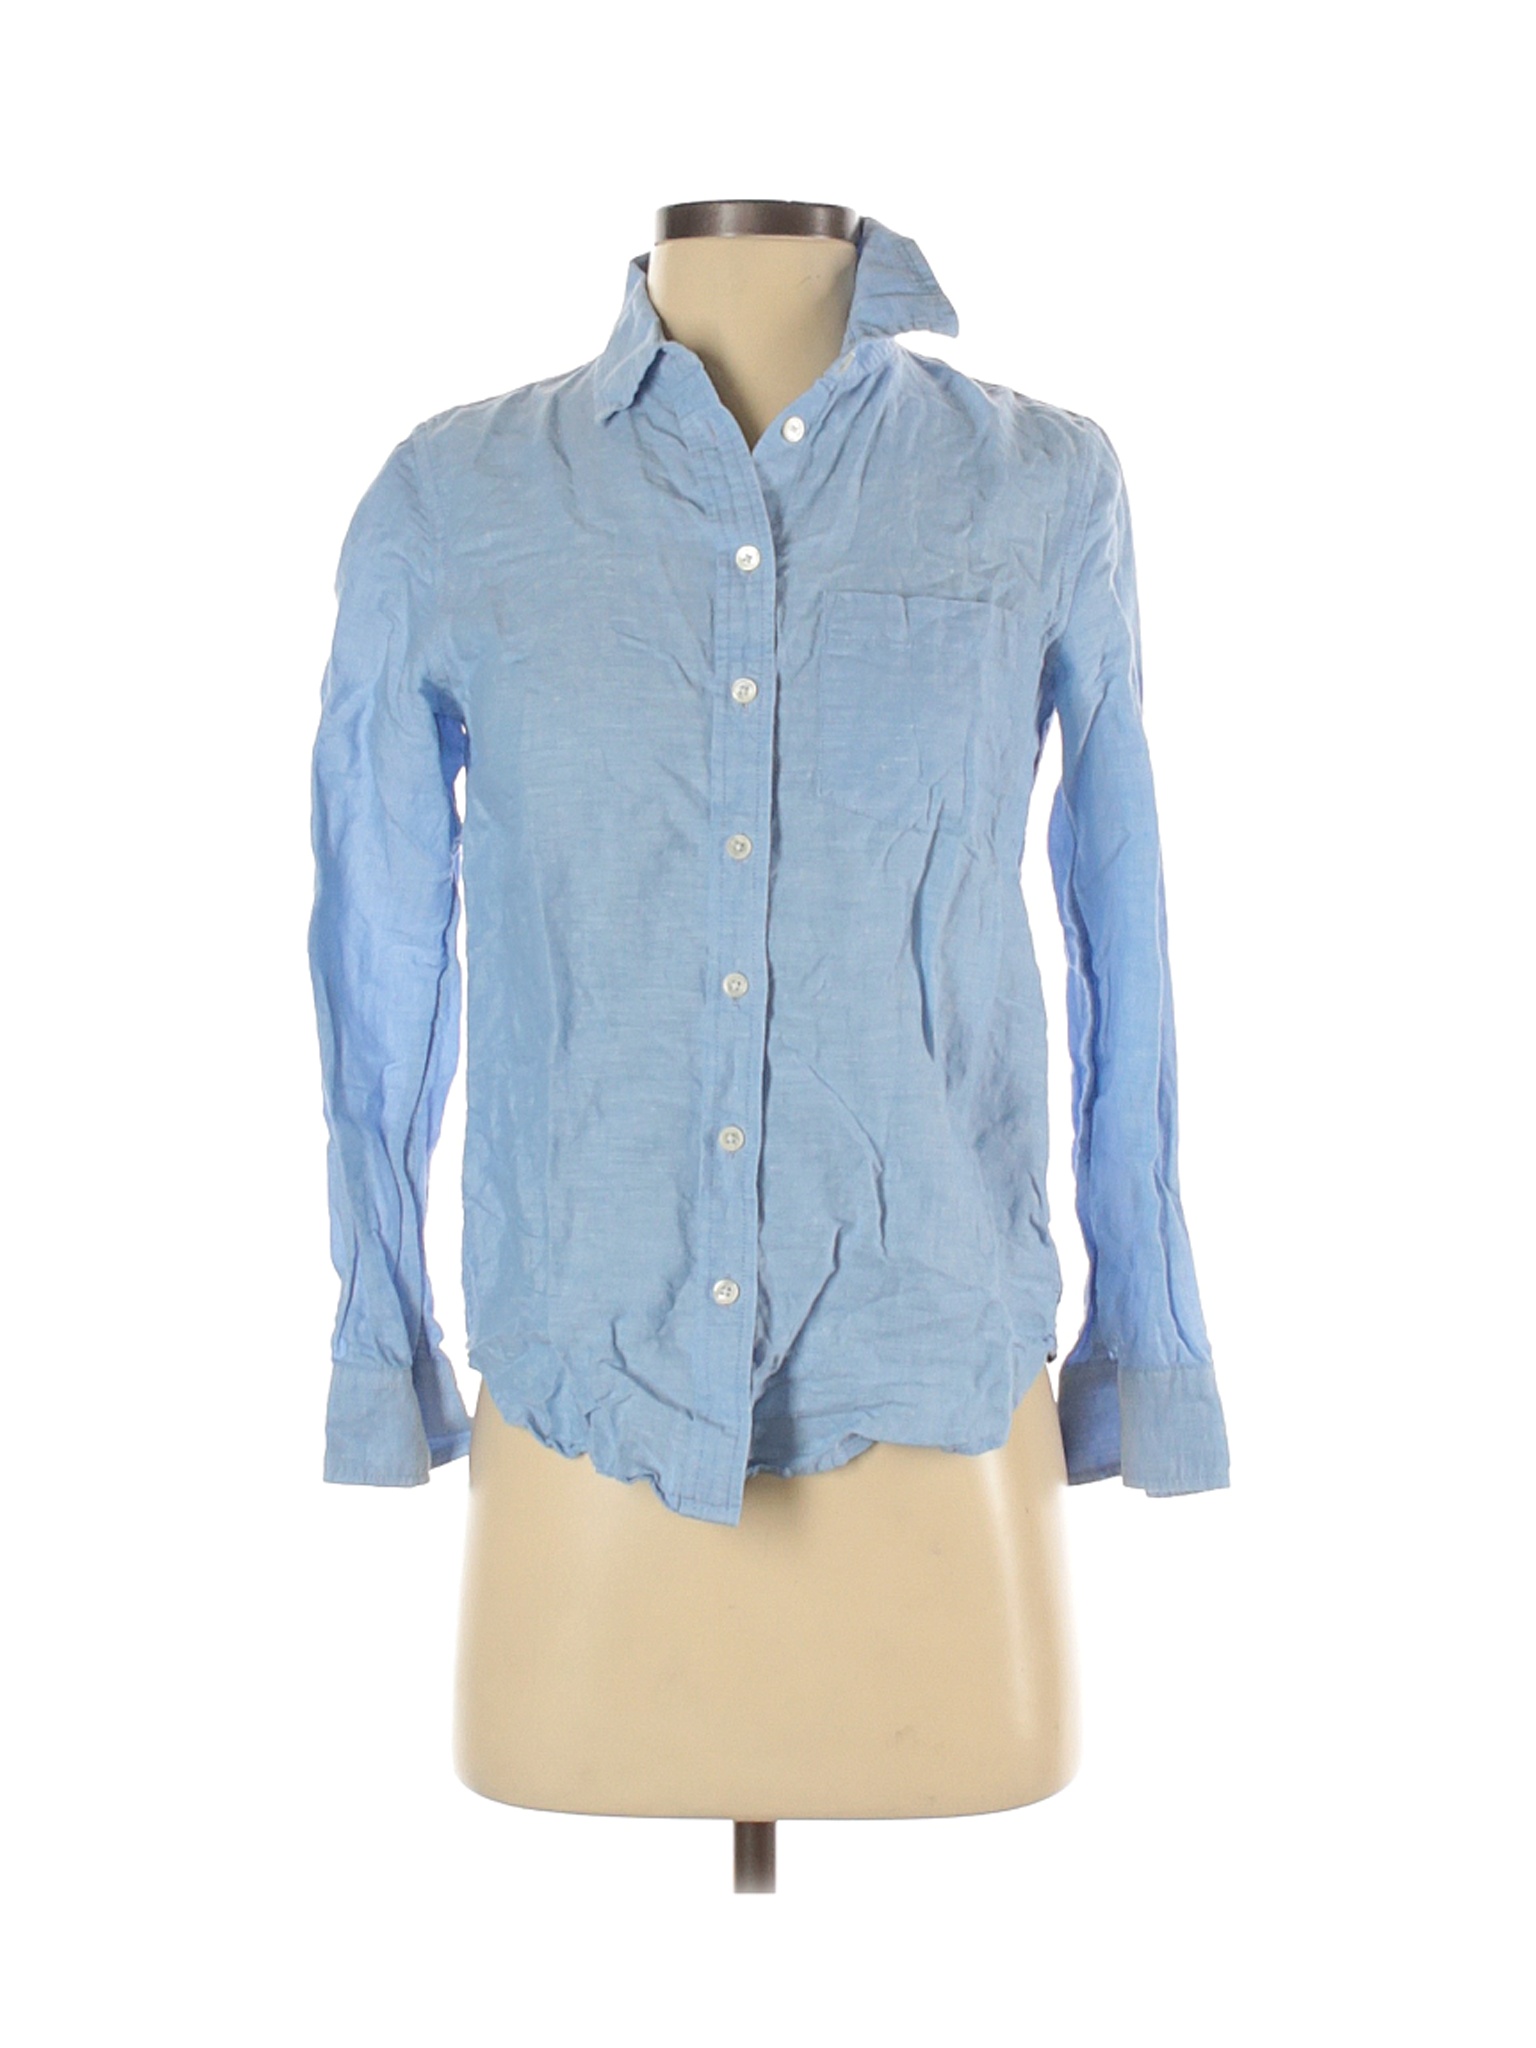 Banana Republic Women Blue Long Sleeve Button-Down Shirt XS Petites | eBay